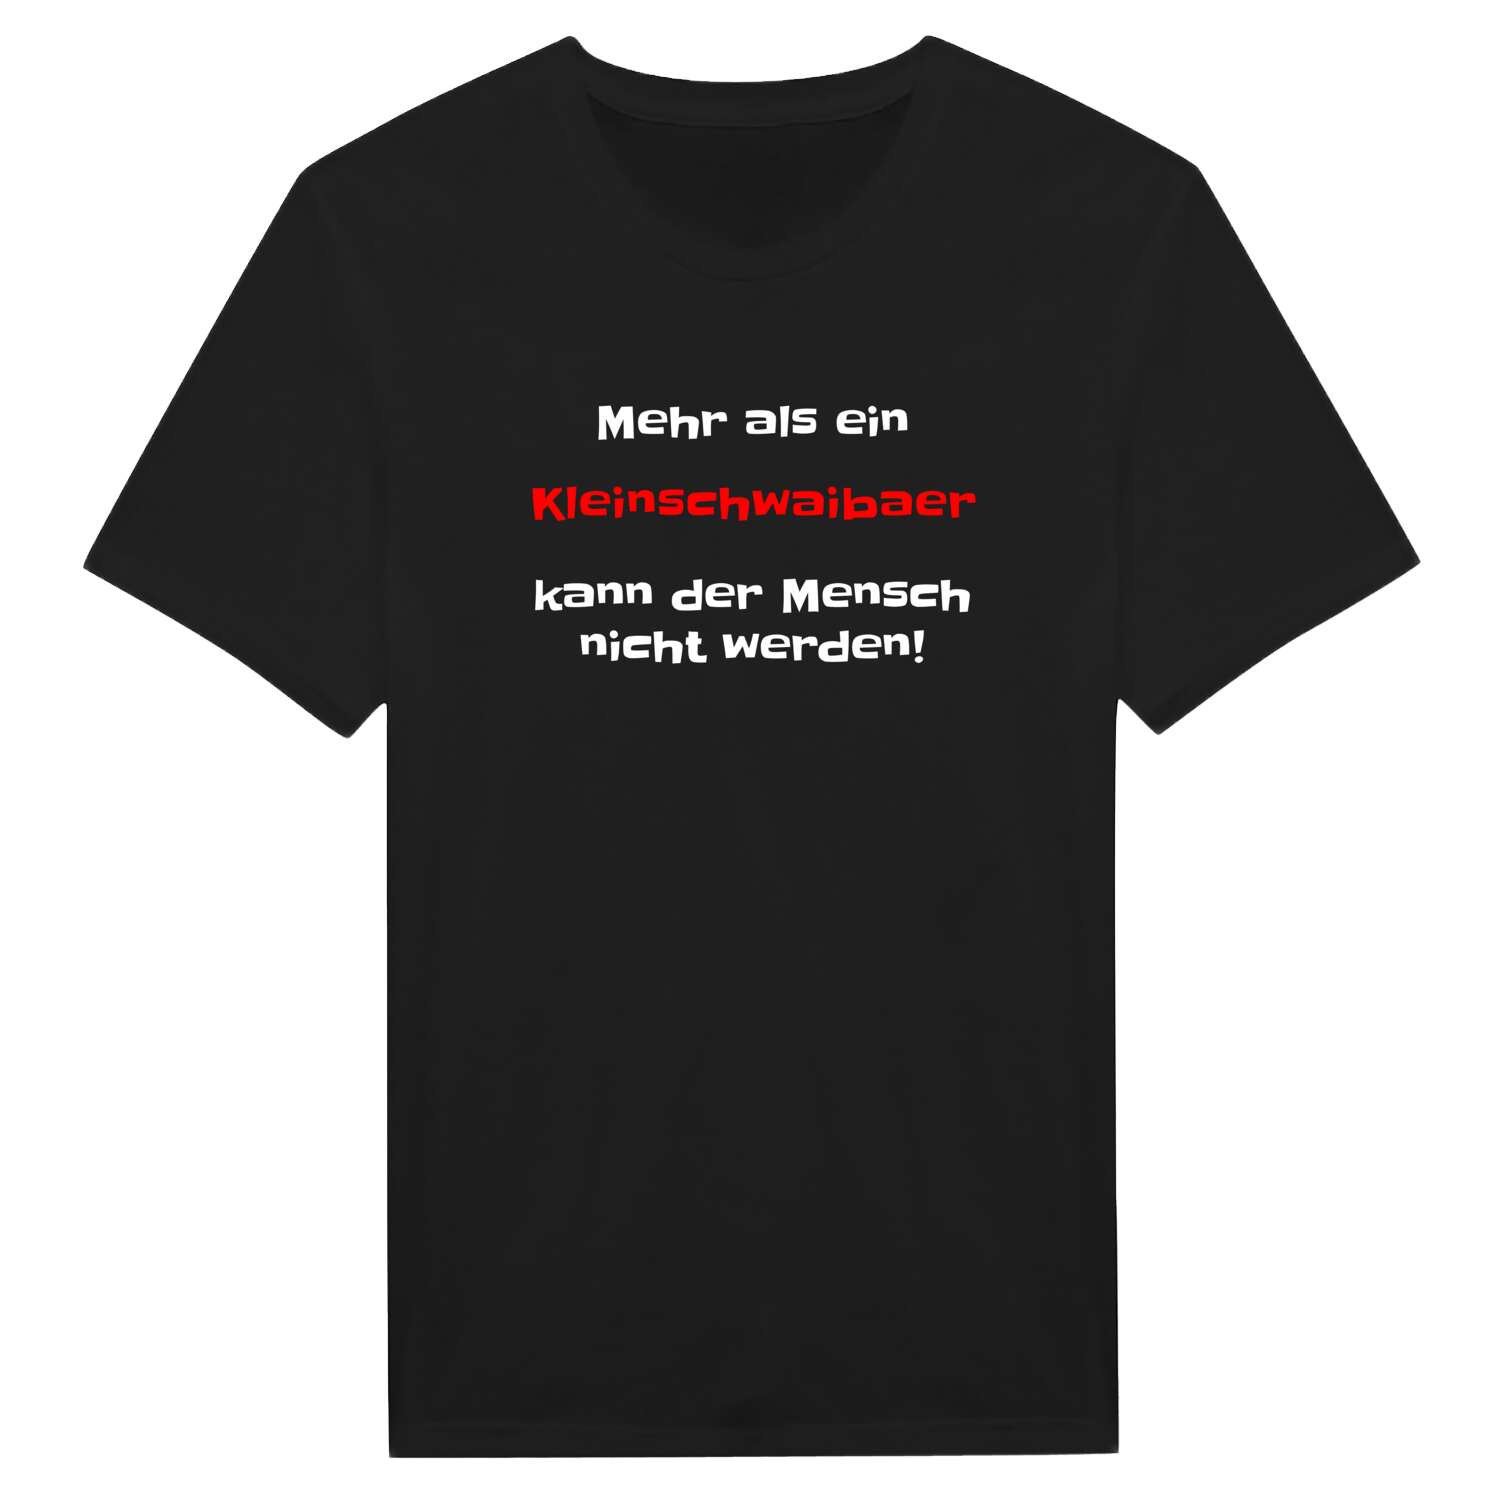 Kleinschwaiba T-Shirt »Mehr als ein«